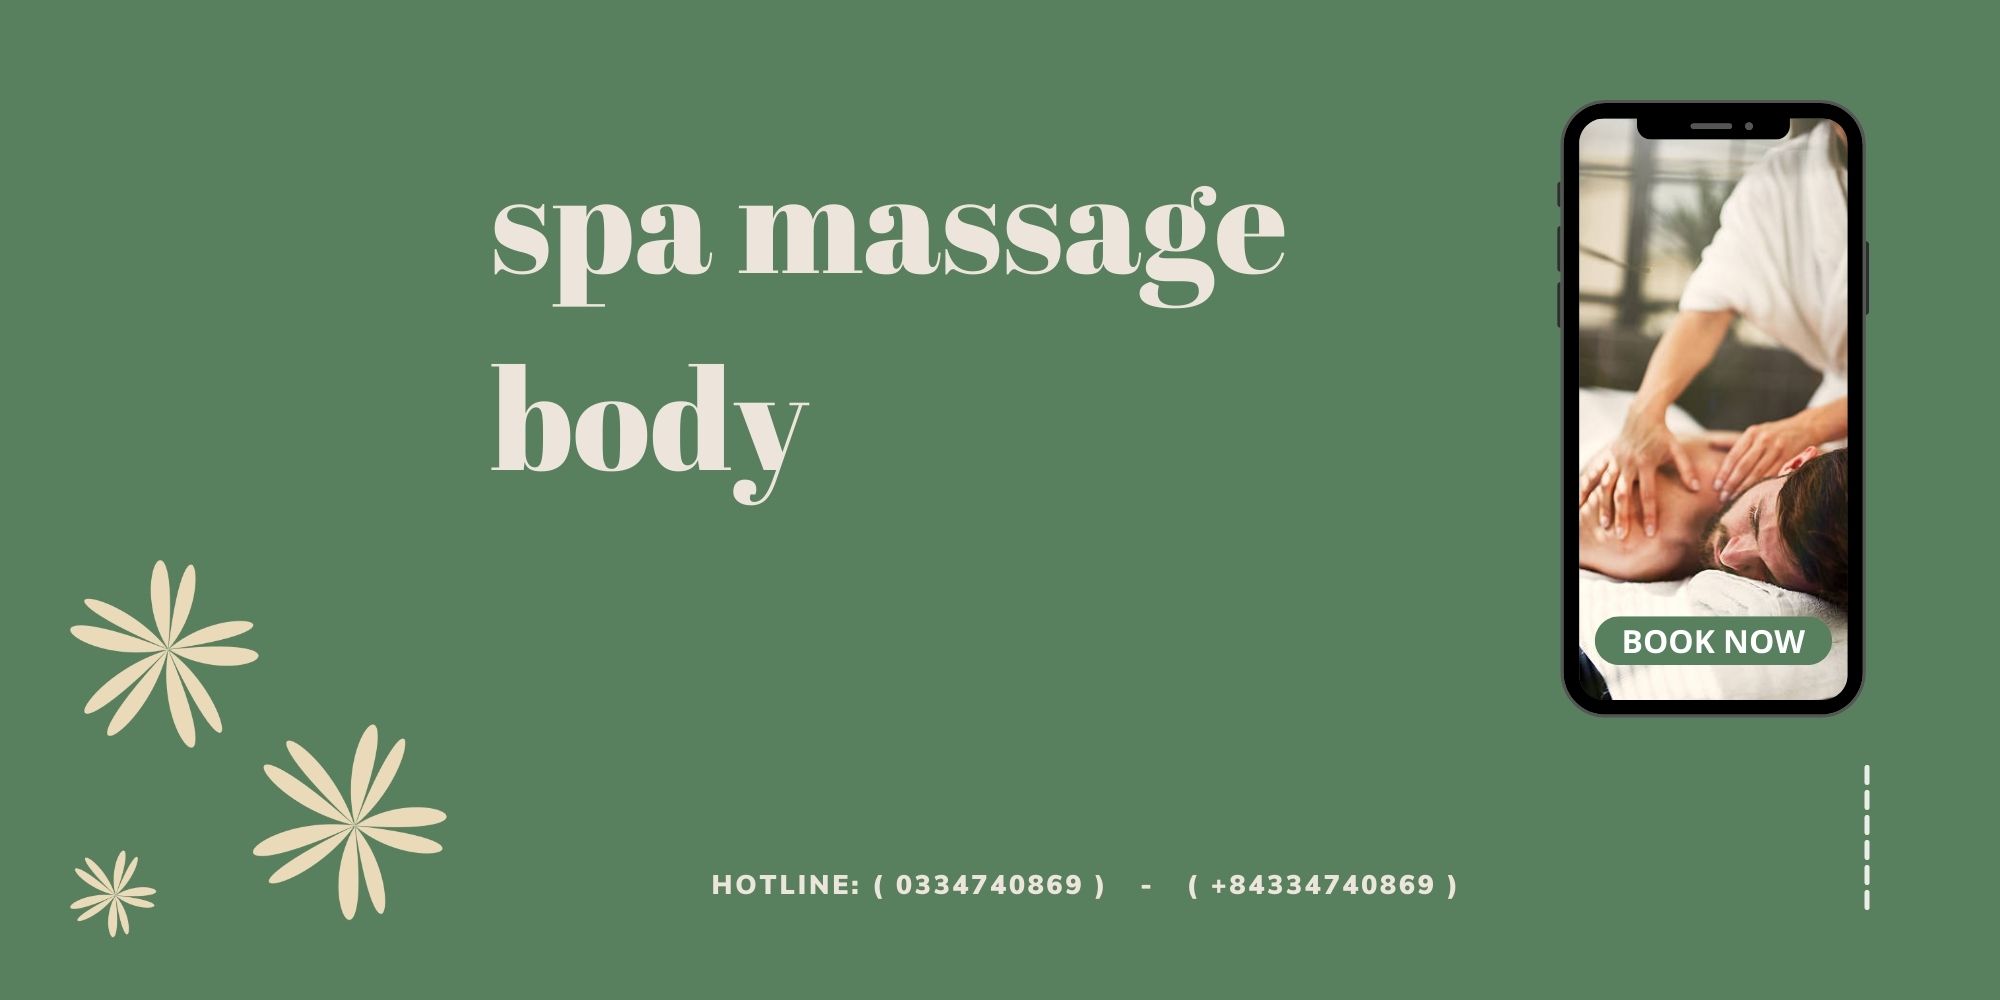 spa massage body AD MASSAGE